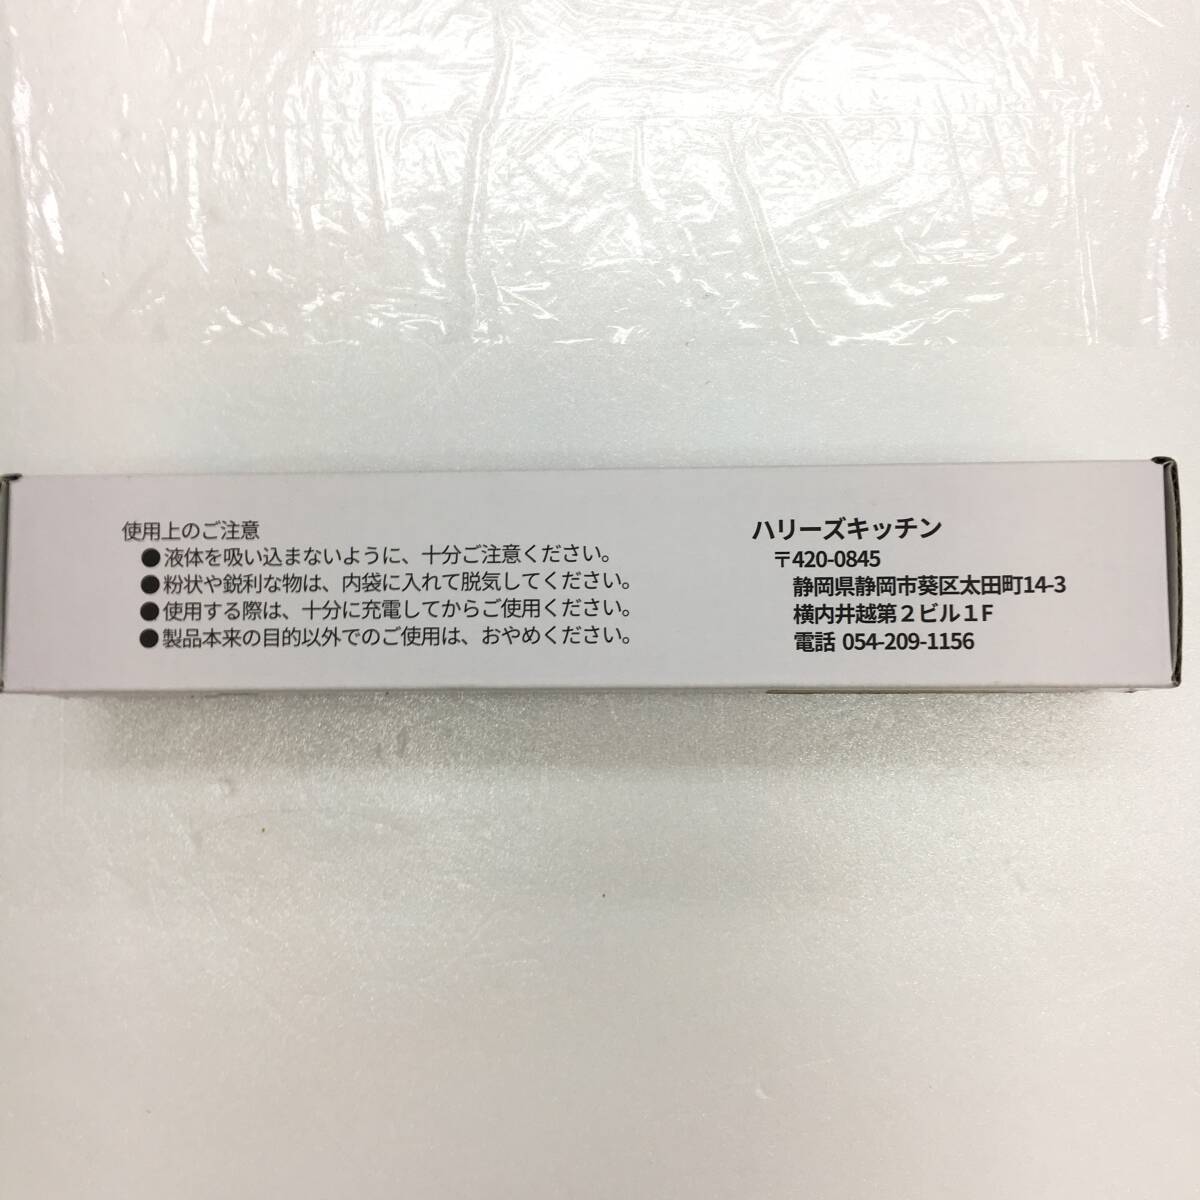 【1  йен  аукцион 】  рука ...  беспроводной    кухня   ... ... степень поддерживать   сумка  ... кольцо    черный  TS01B001507